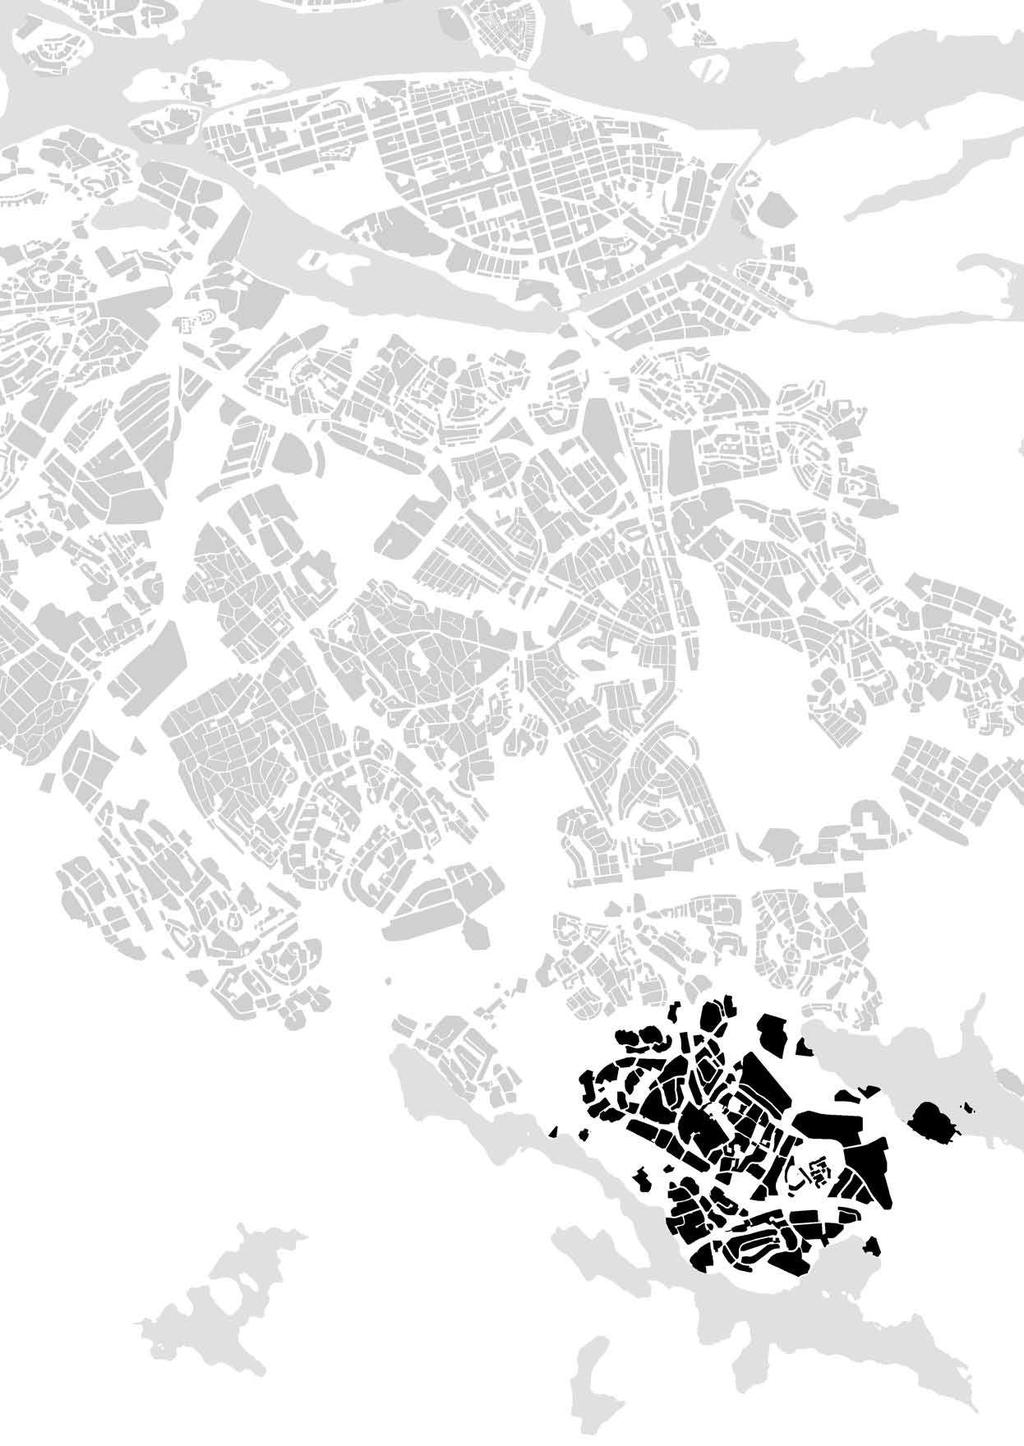 Tillgänglighet 21 Medborgarplatsen promenad min promenad 80 km 8 min 70 km 7 Älvsjömässan 6 km 60 min promenad Globen promenad promenad min